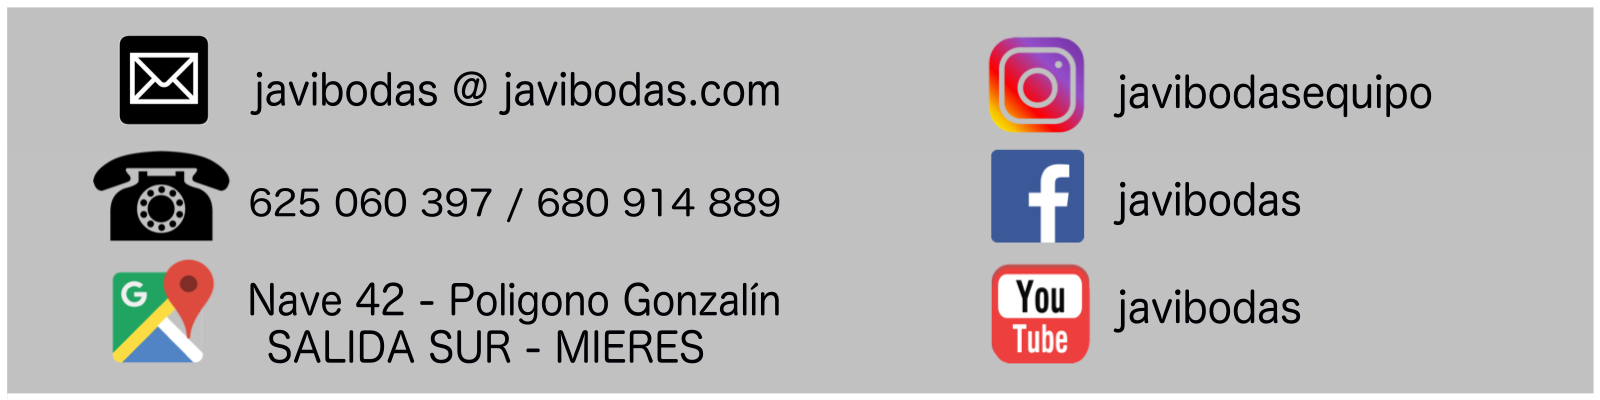 javibodas -DJ ANIMADOR BODAS ASTURIAS Y LEON, Tienda de detalles asturianos, vaso y botella de sidra personalizados